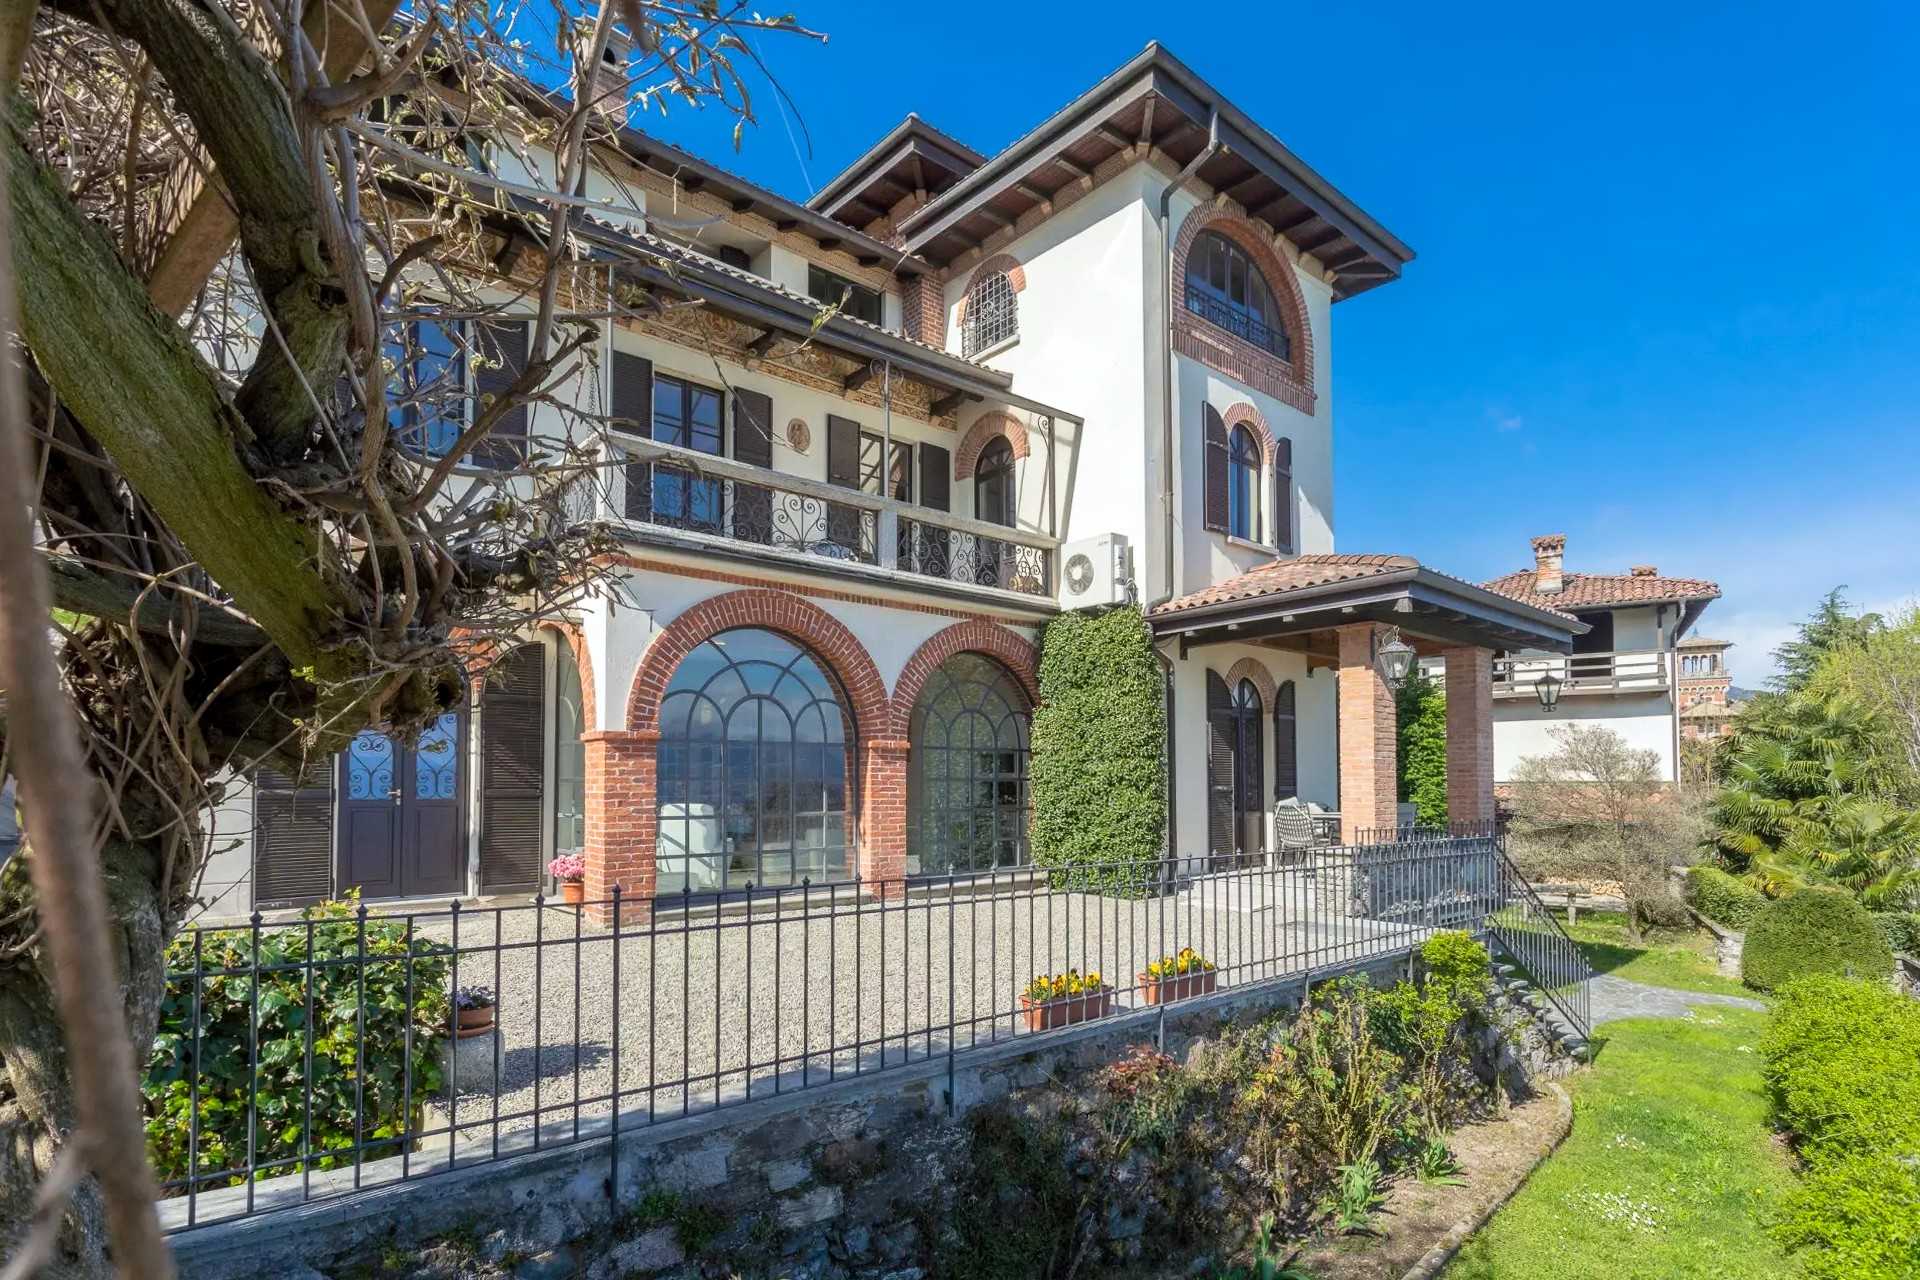 Immagini Villa in stile liberty con vista sul lago vicino a Stresa